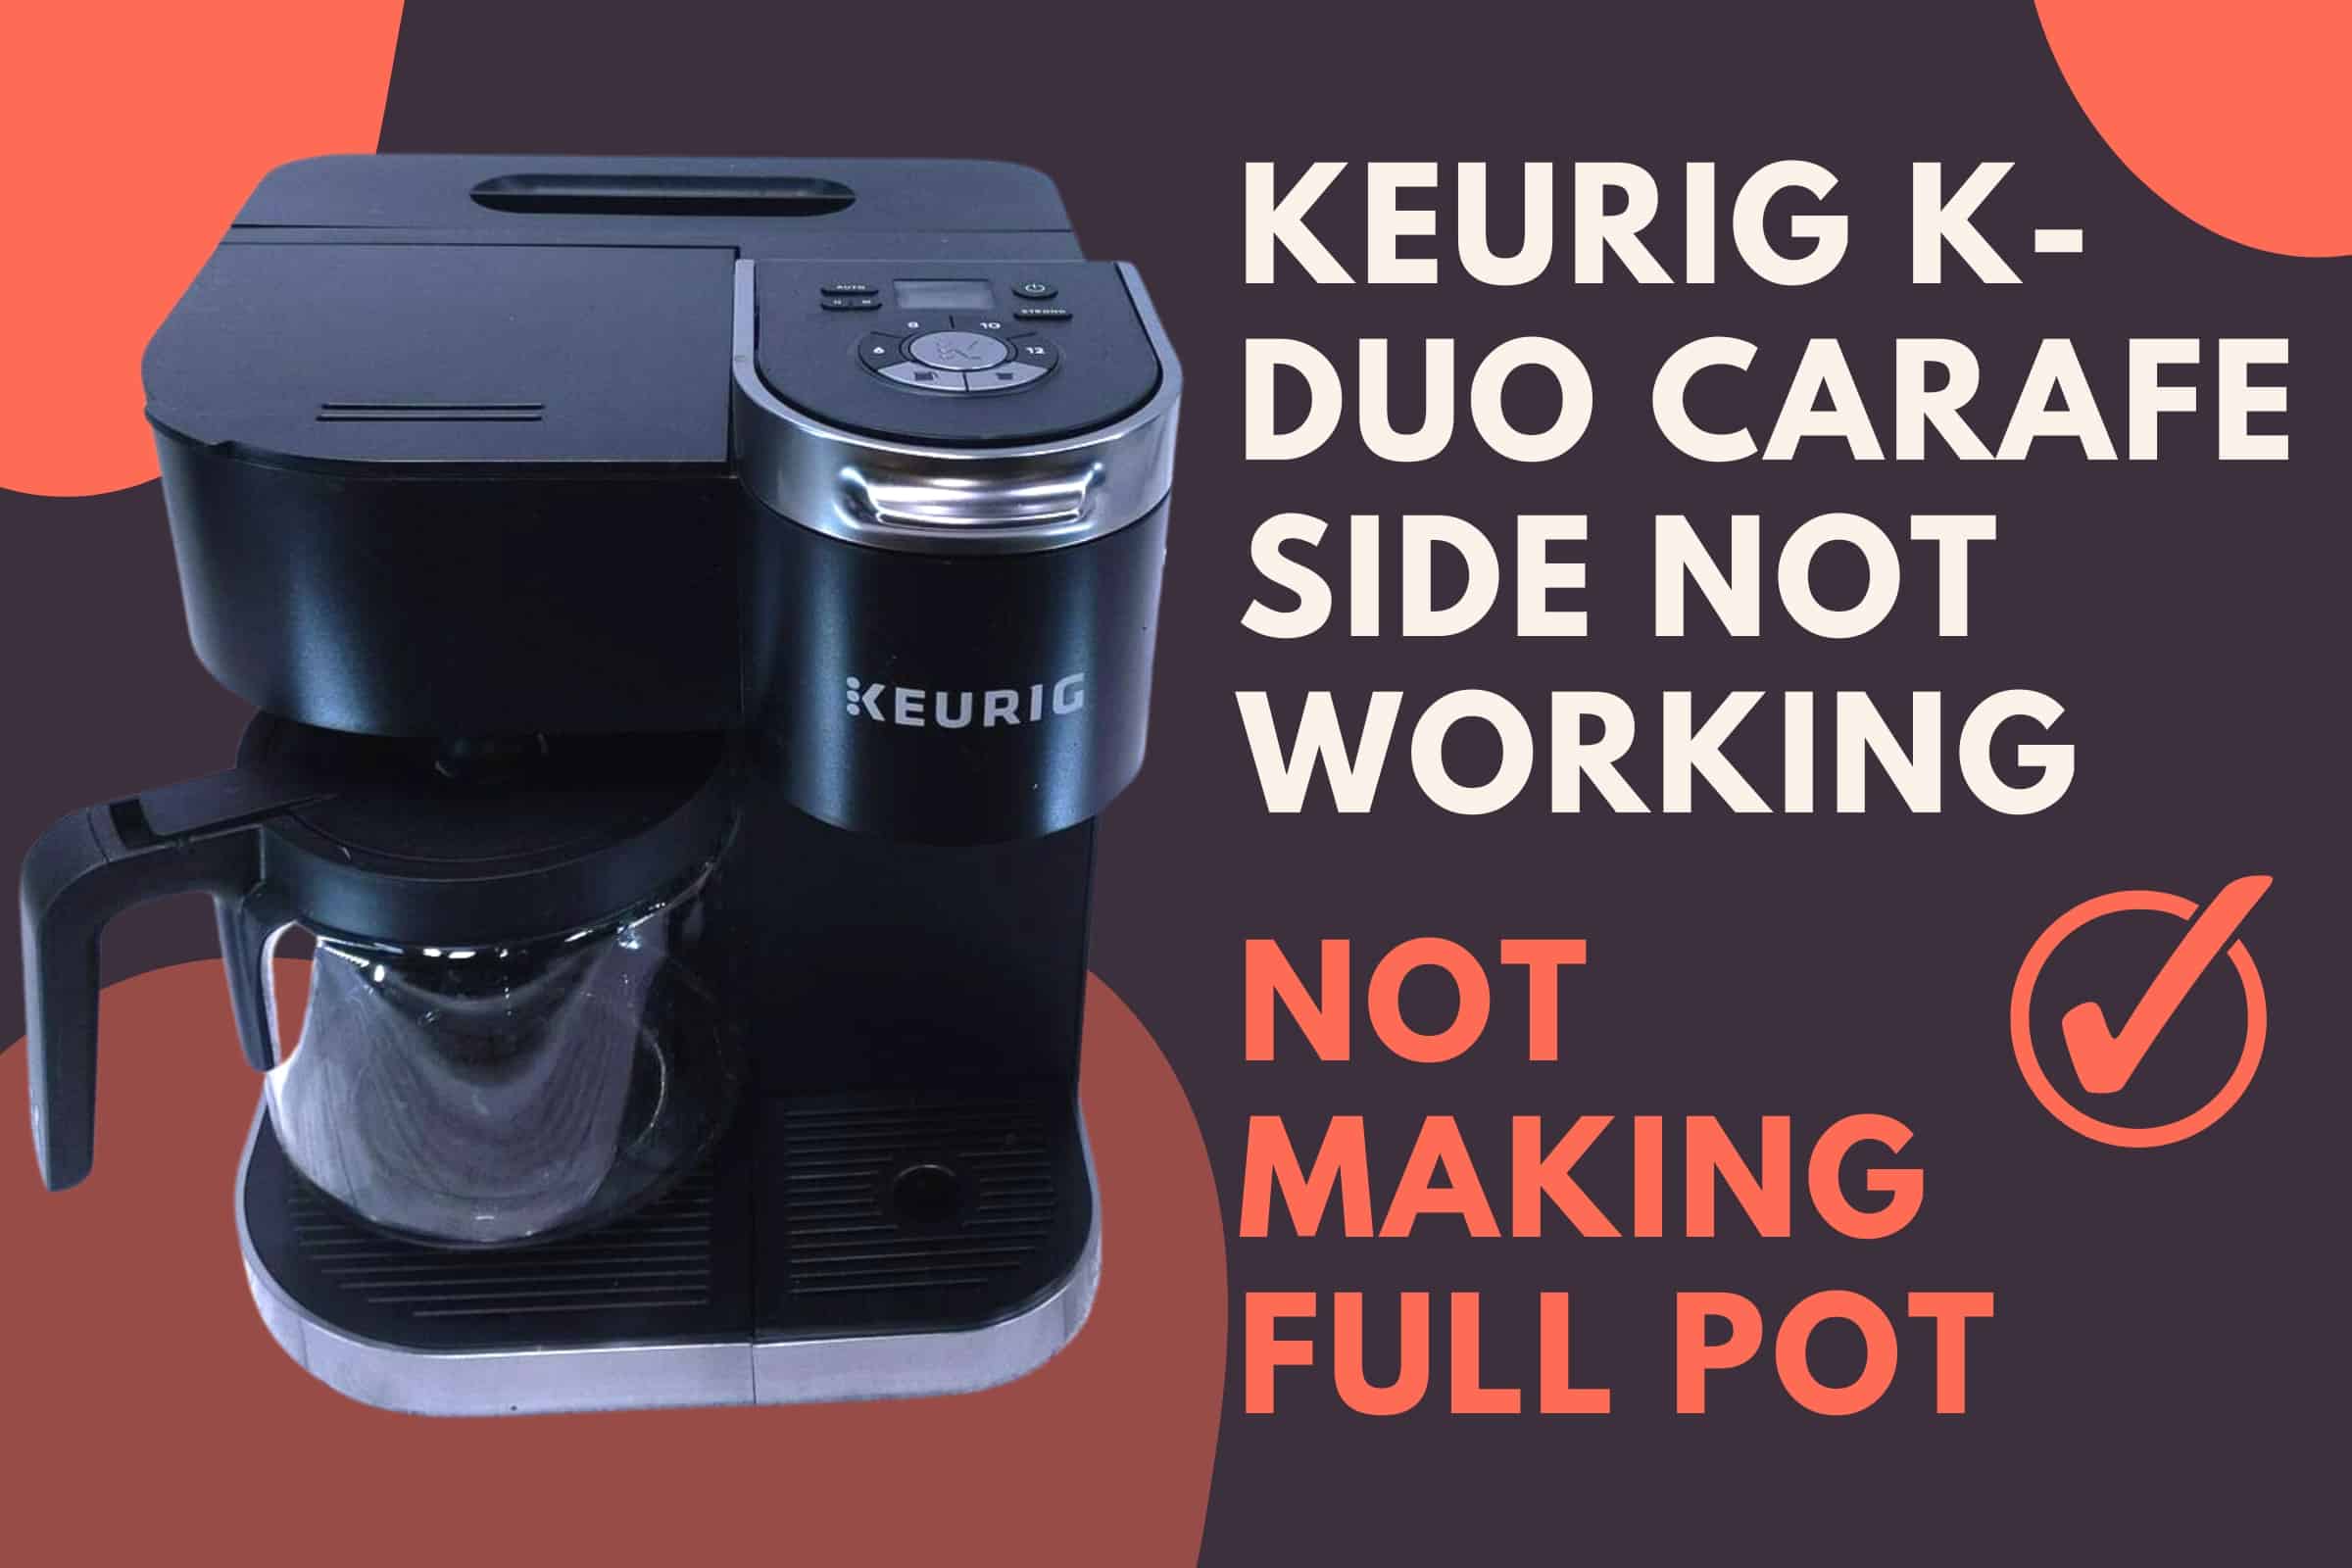 Keurig K-Duo Carafe Side Not Working not making full pot